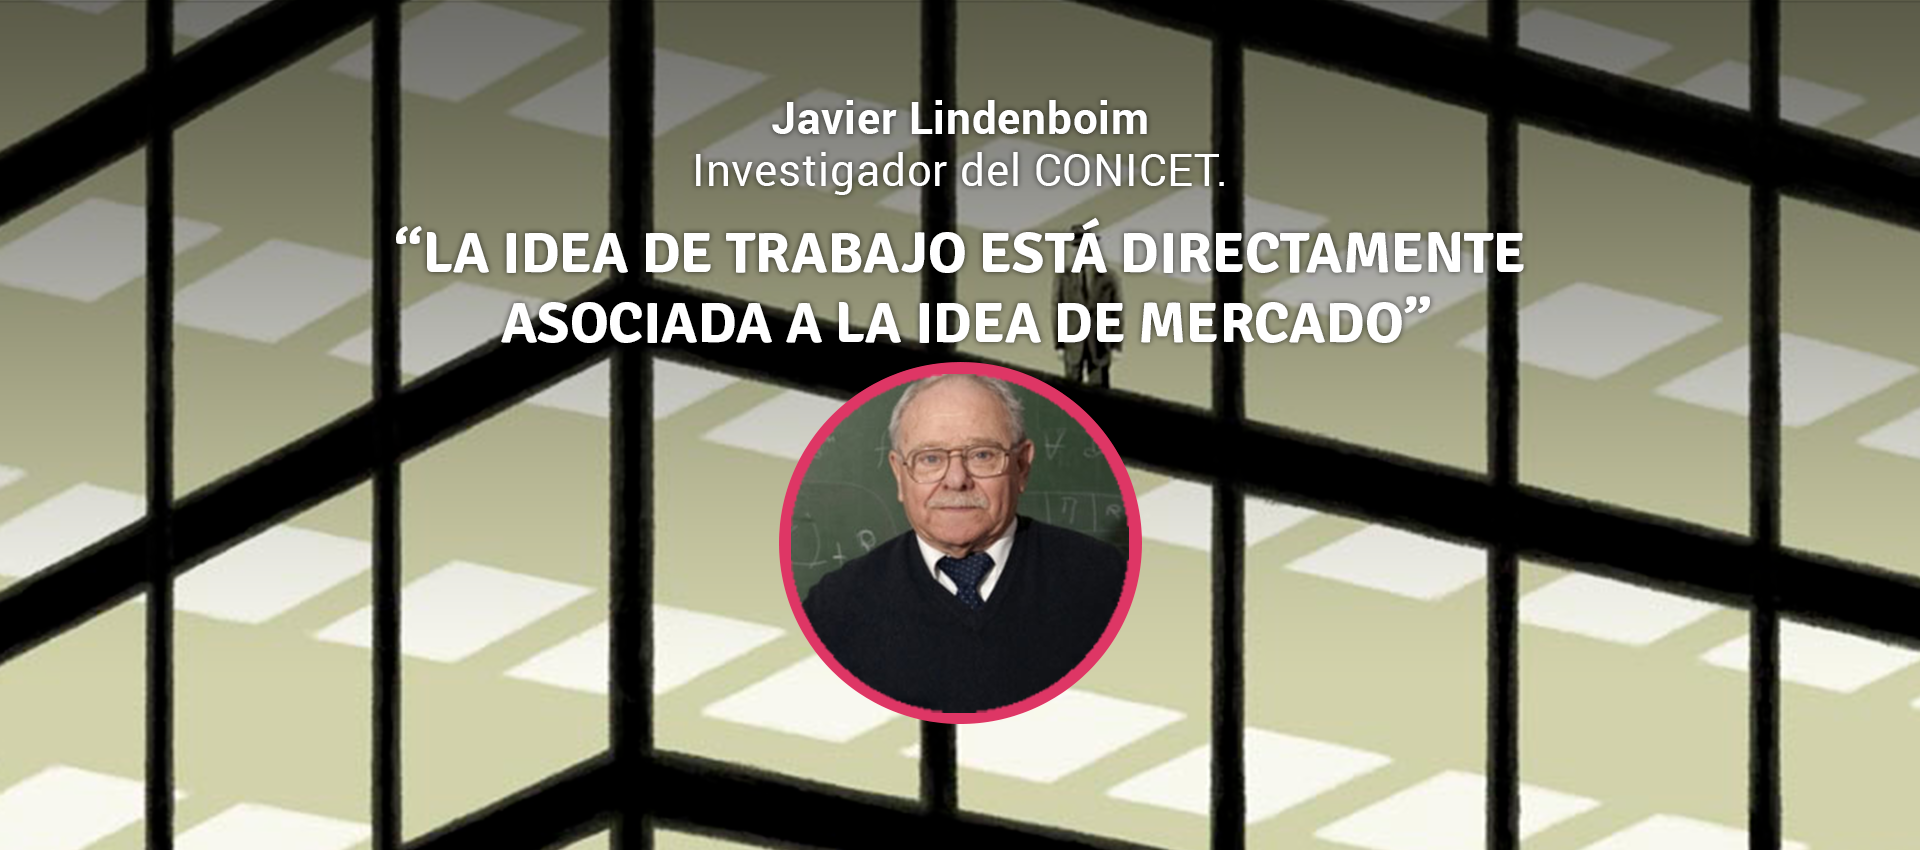 JAVIER LINDENBOIM: "LA IDEA DE TRABAJO ESTÁ DIRECTAMENTE ASOCIADA A LA IDEA DE MERCADO"